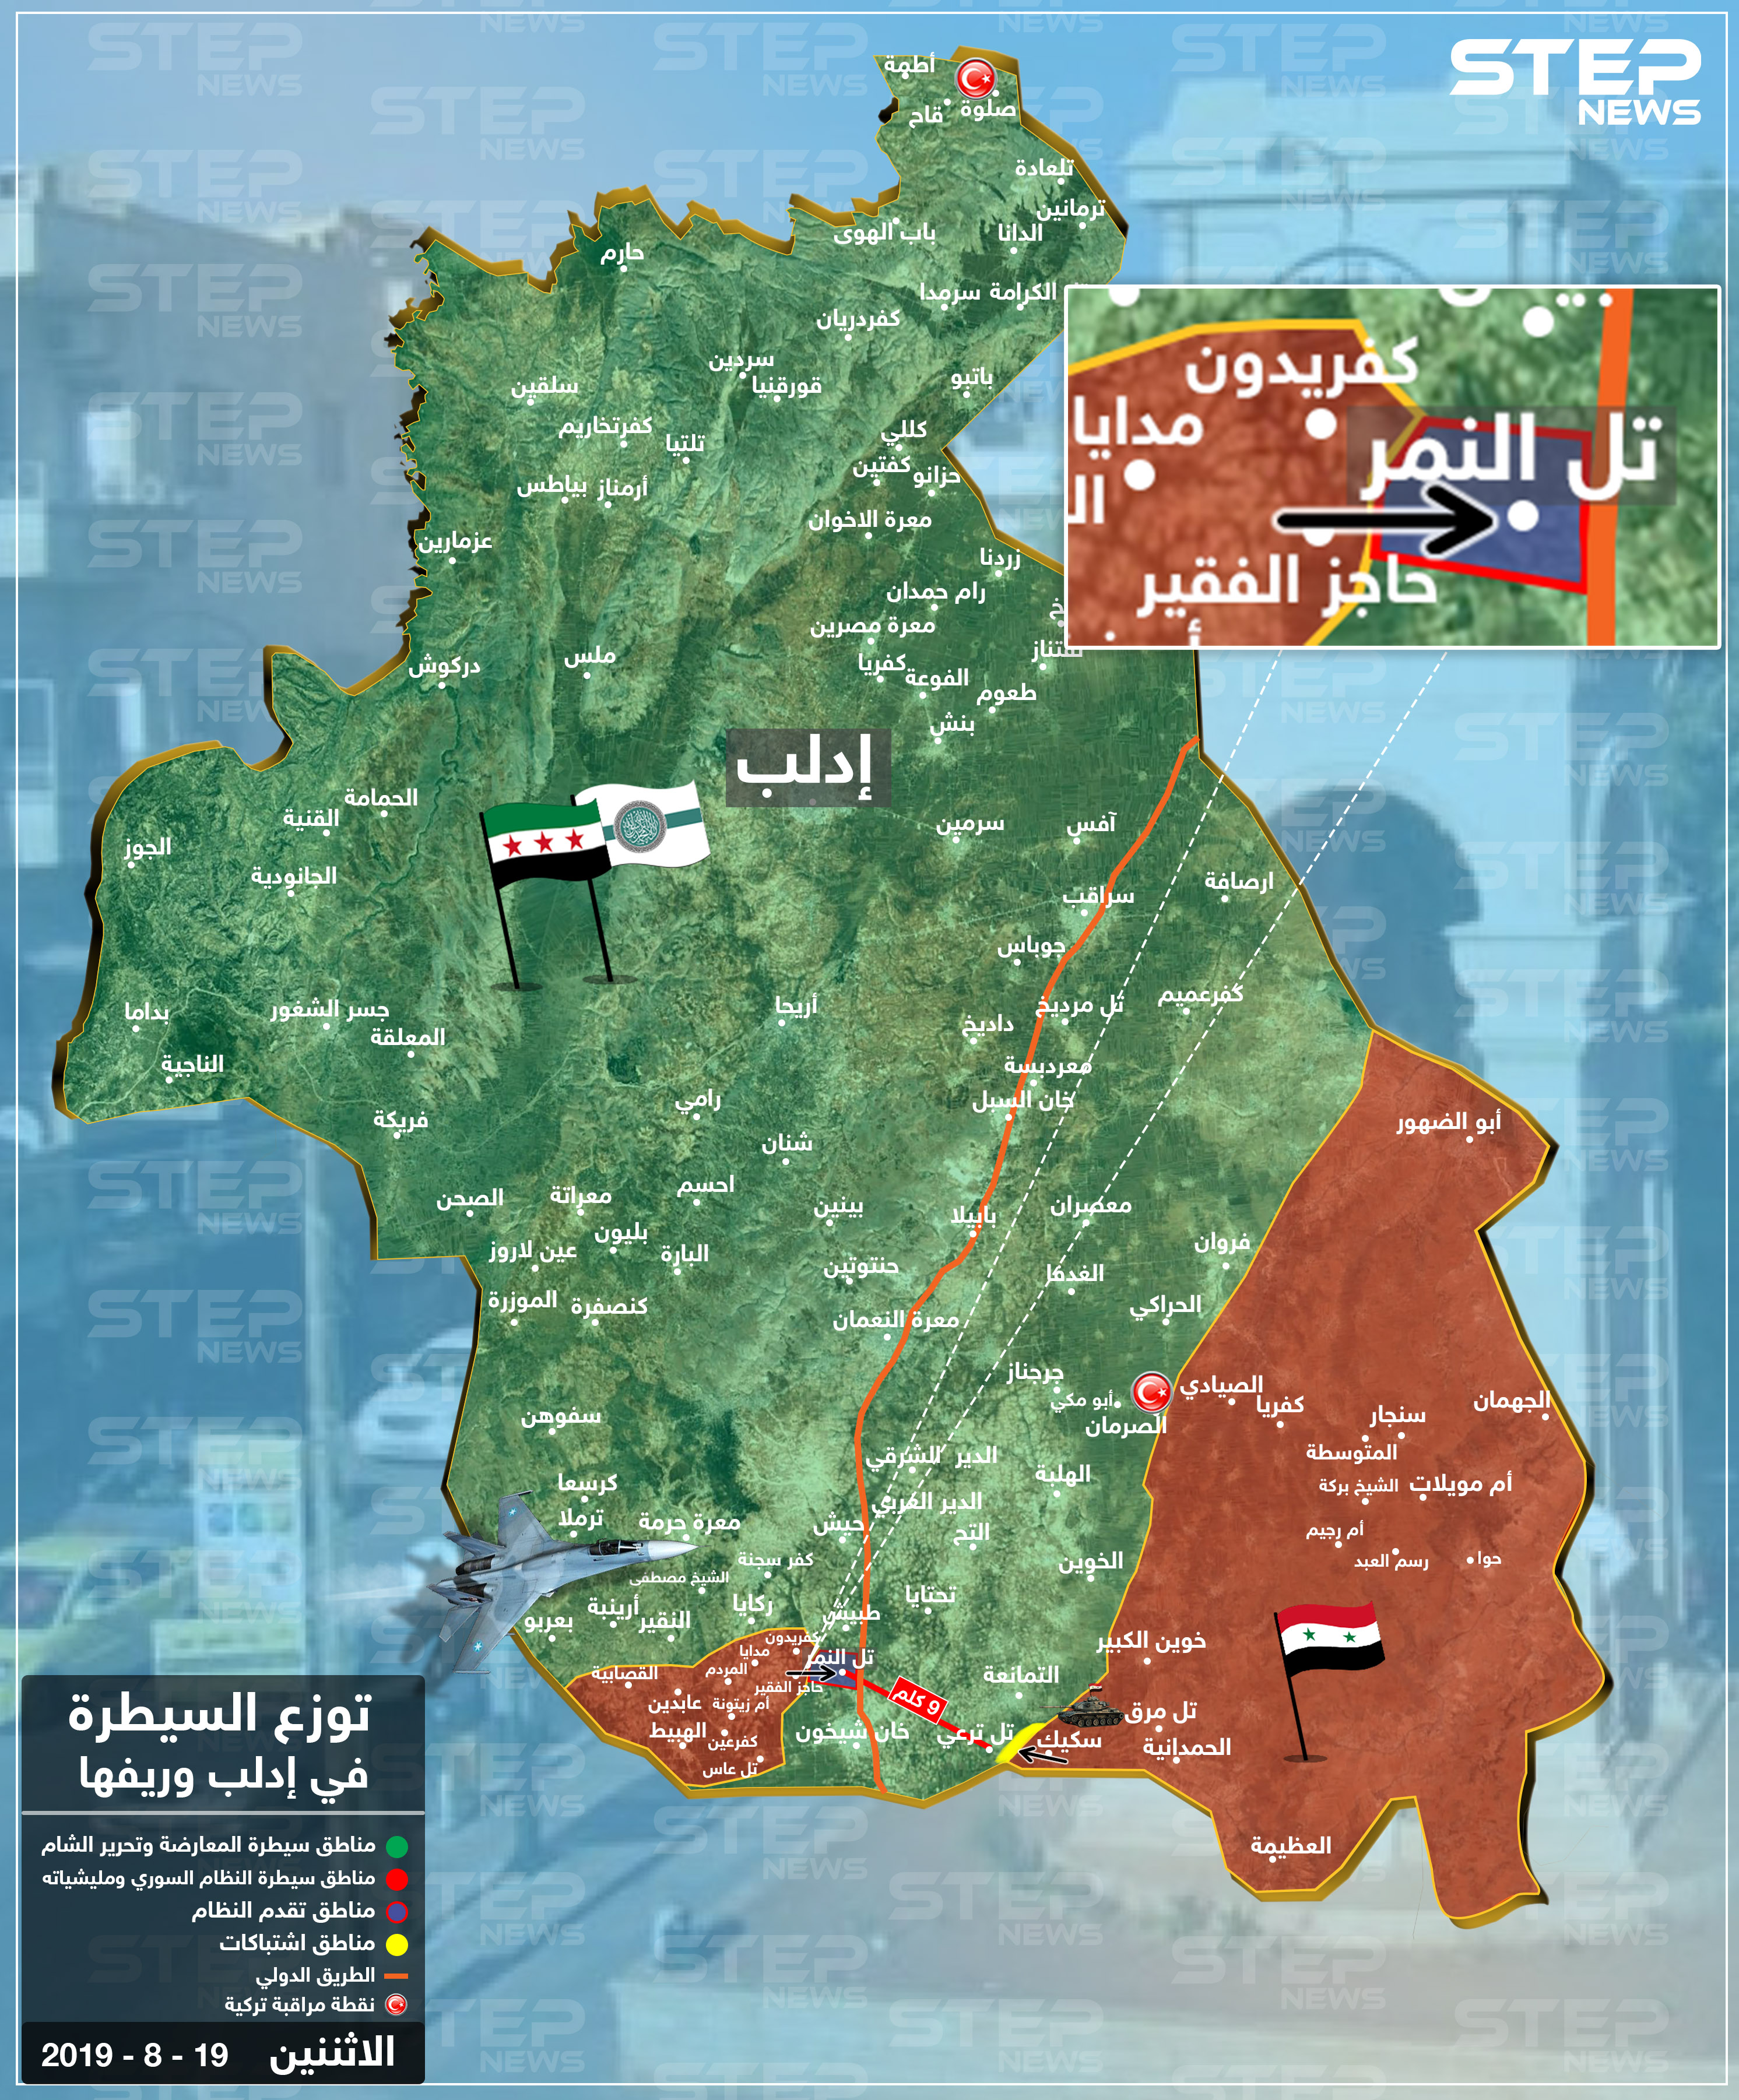 خريطة لتقدم النظام السوري بمحيط خان شيخون جنوب إدلب ووصوله للطريق الدولي حلب - دمشق